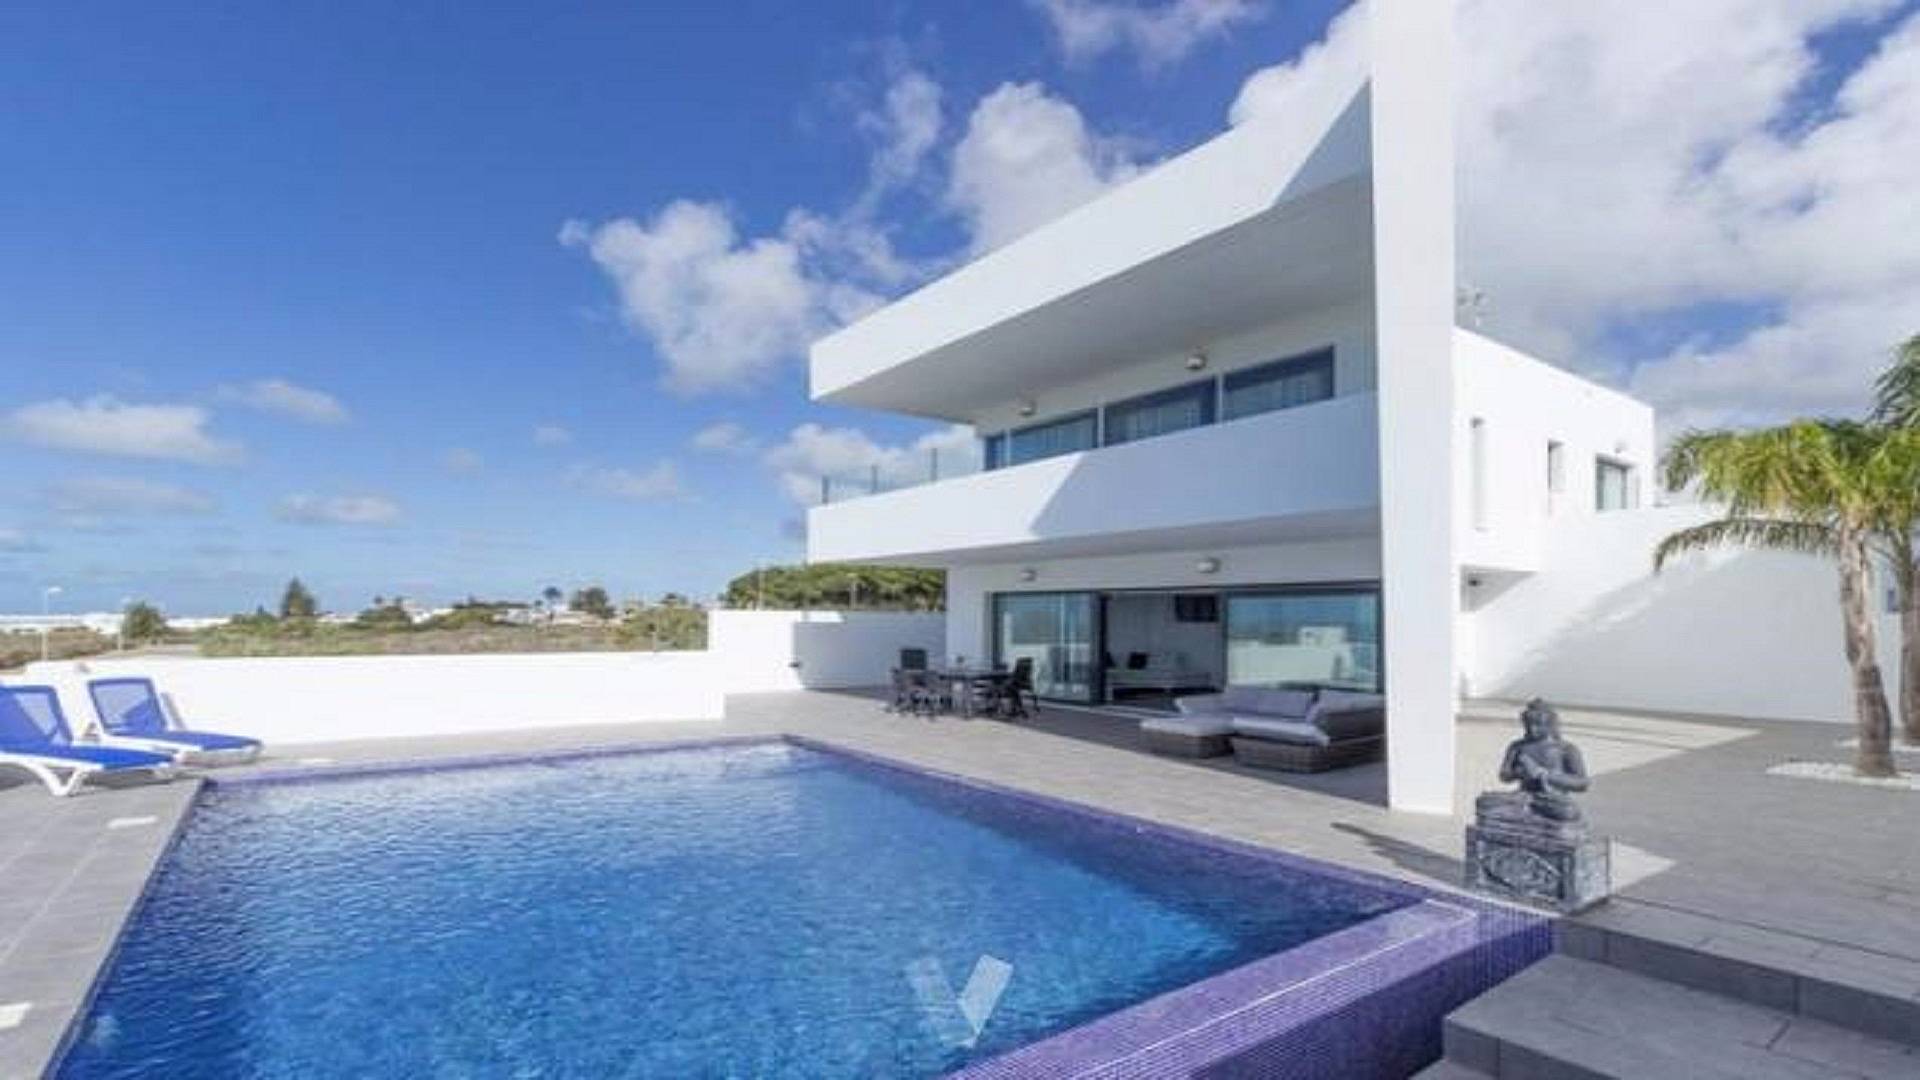 enlace Ahora Decir a un lado Villa de lujo a 300m de la playa la fontanilla - Conil de la Frontera  (Cádiz) Costa de la Luz